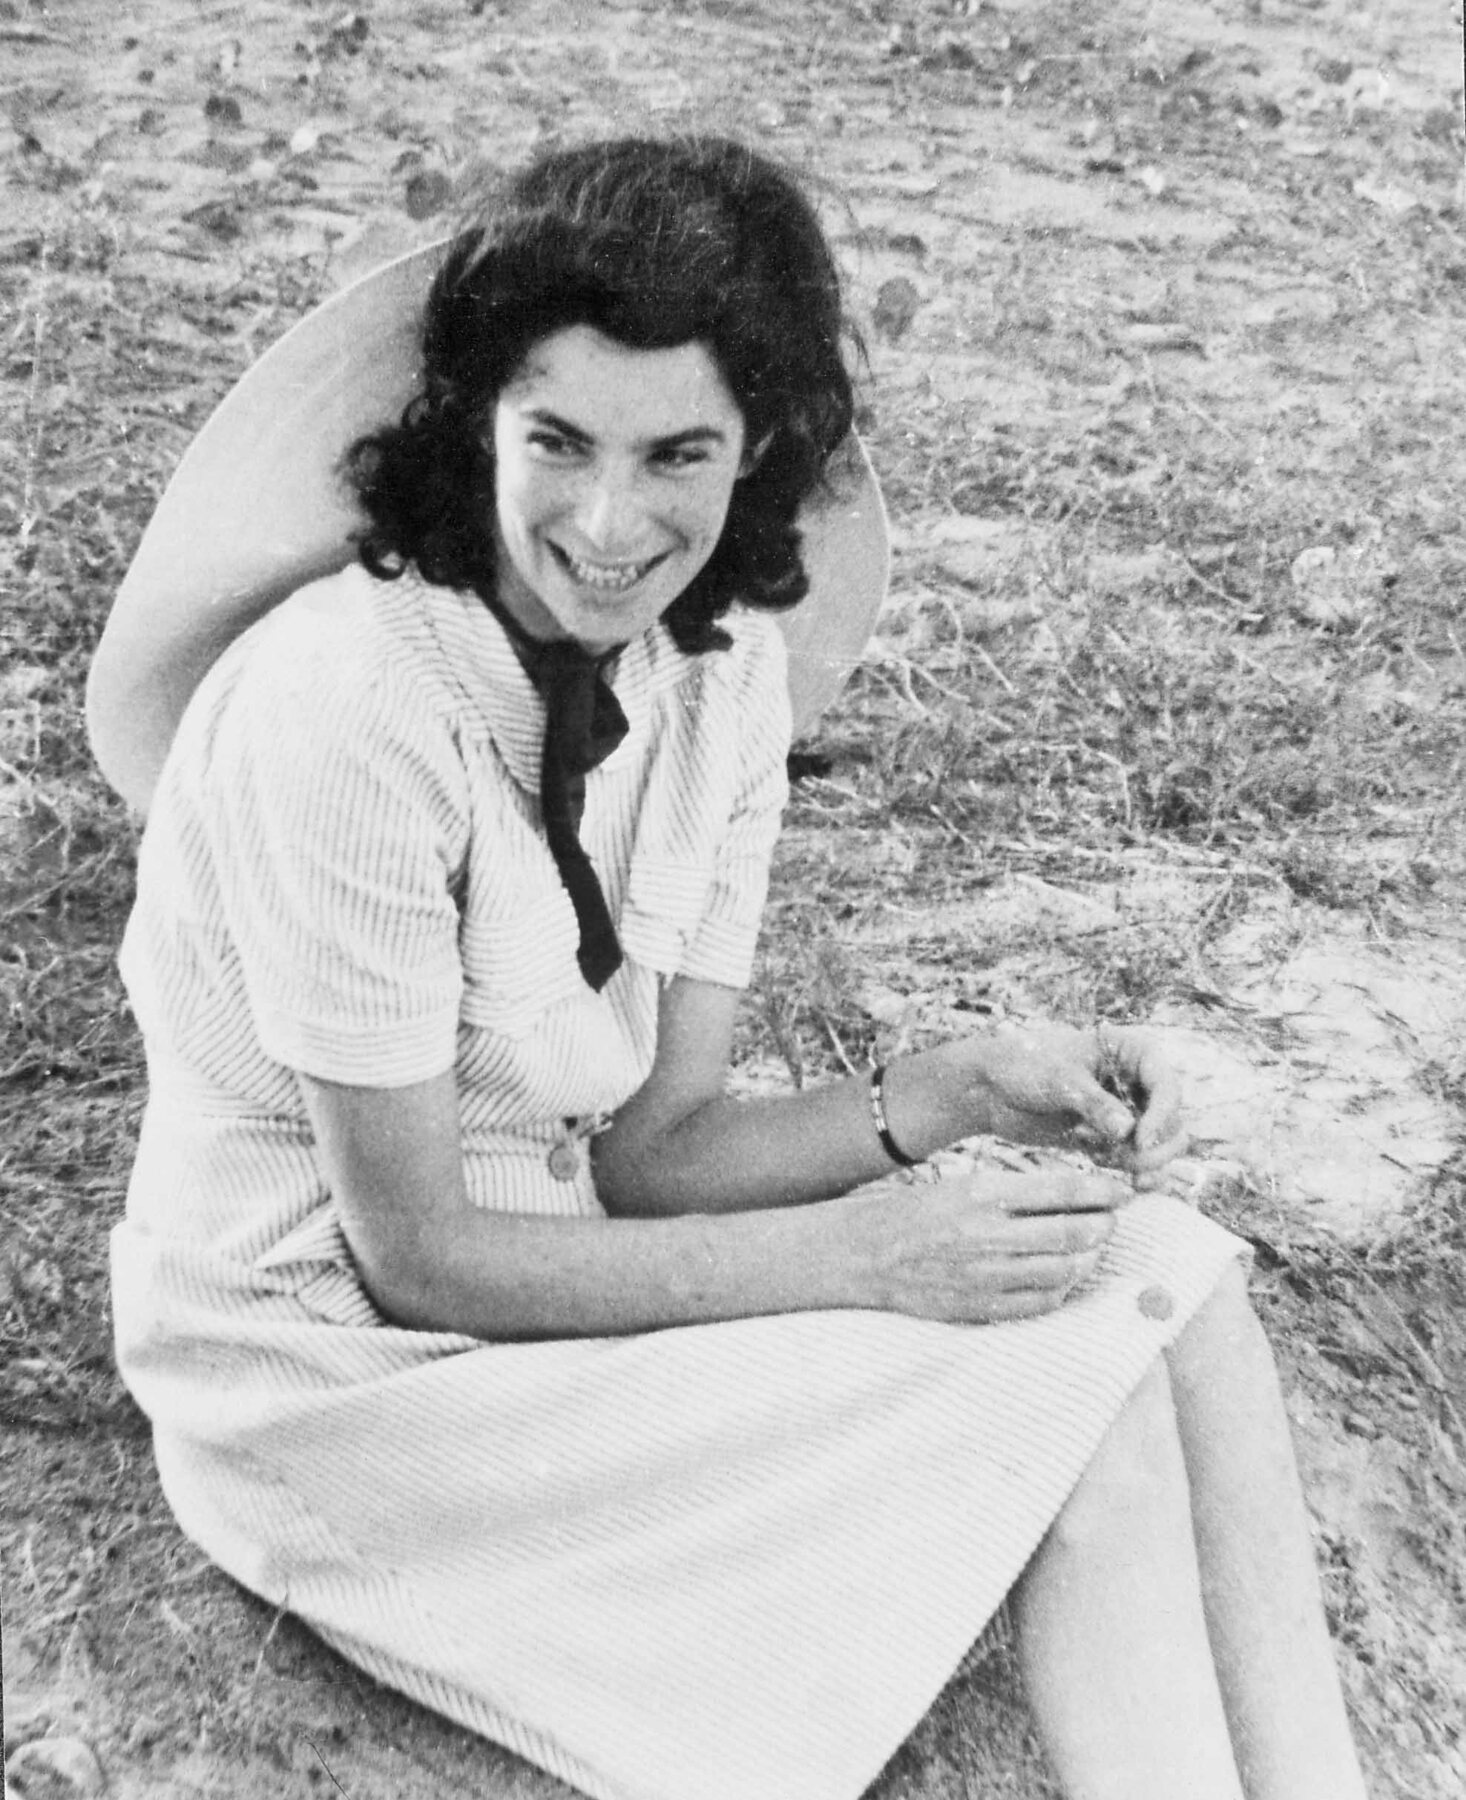 Fotografia em preto e branco. Mulher sentada no chão gramado de um espaço ao ar livre. Ela tem cabelo escuro médio, usa um vestido claro e está sorrindo. Usa um chapéu claro apoiado nas costas.